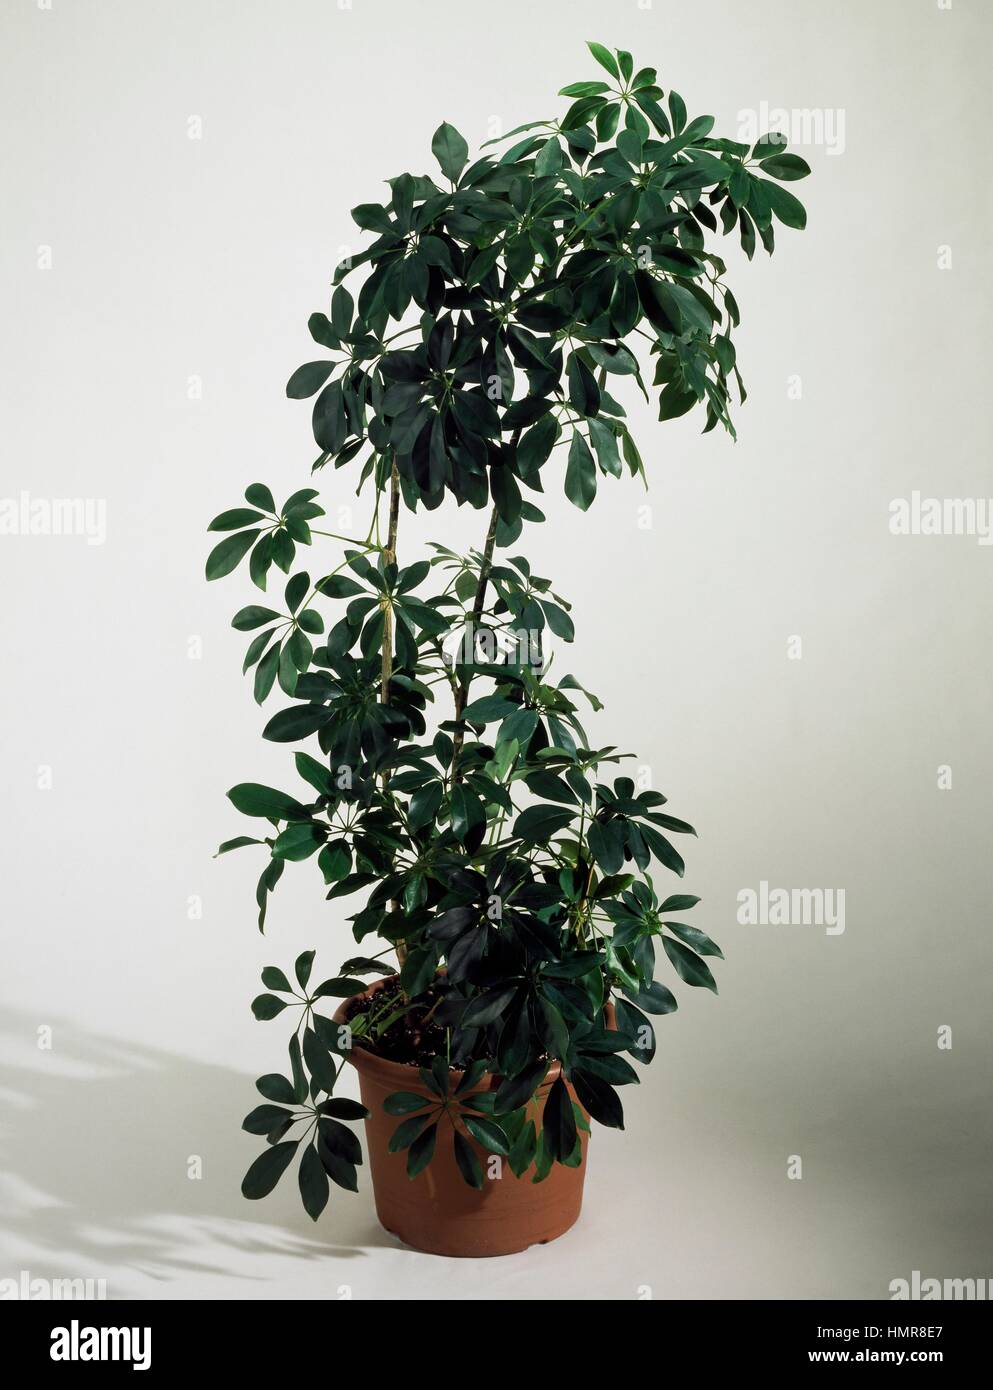 Dwarf umbrella tree (Heptapleurum arboricola), Araliaceae. Stock Photo